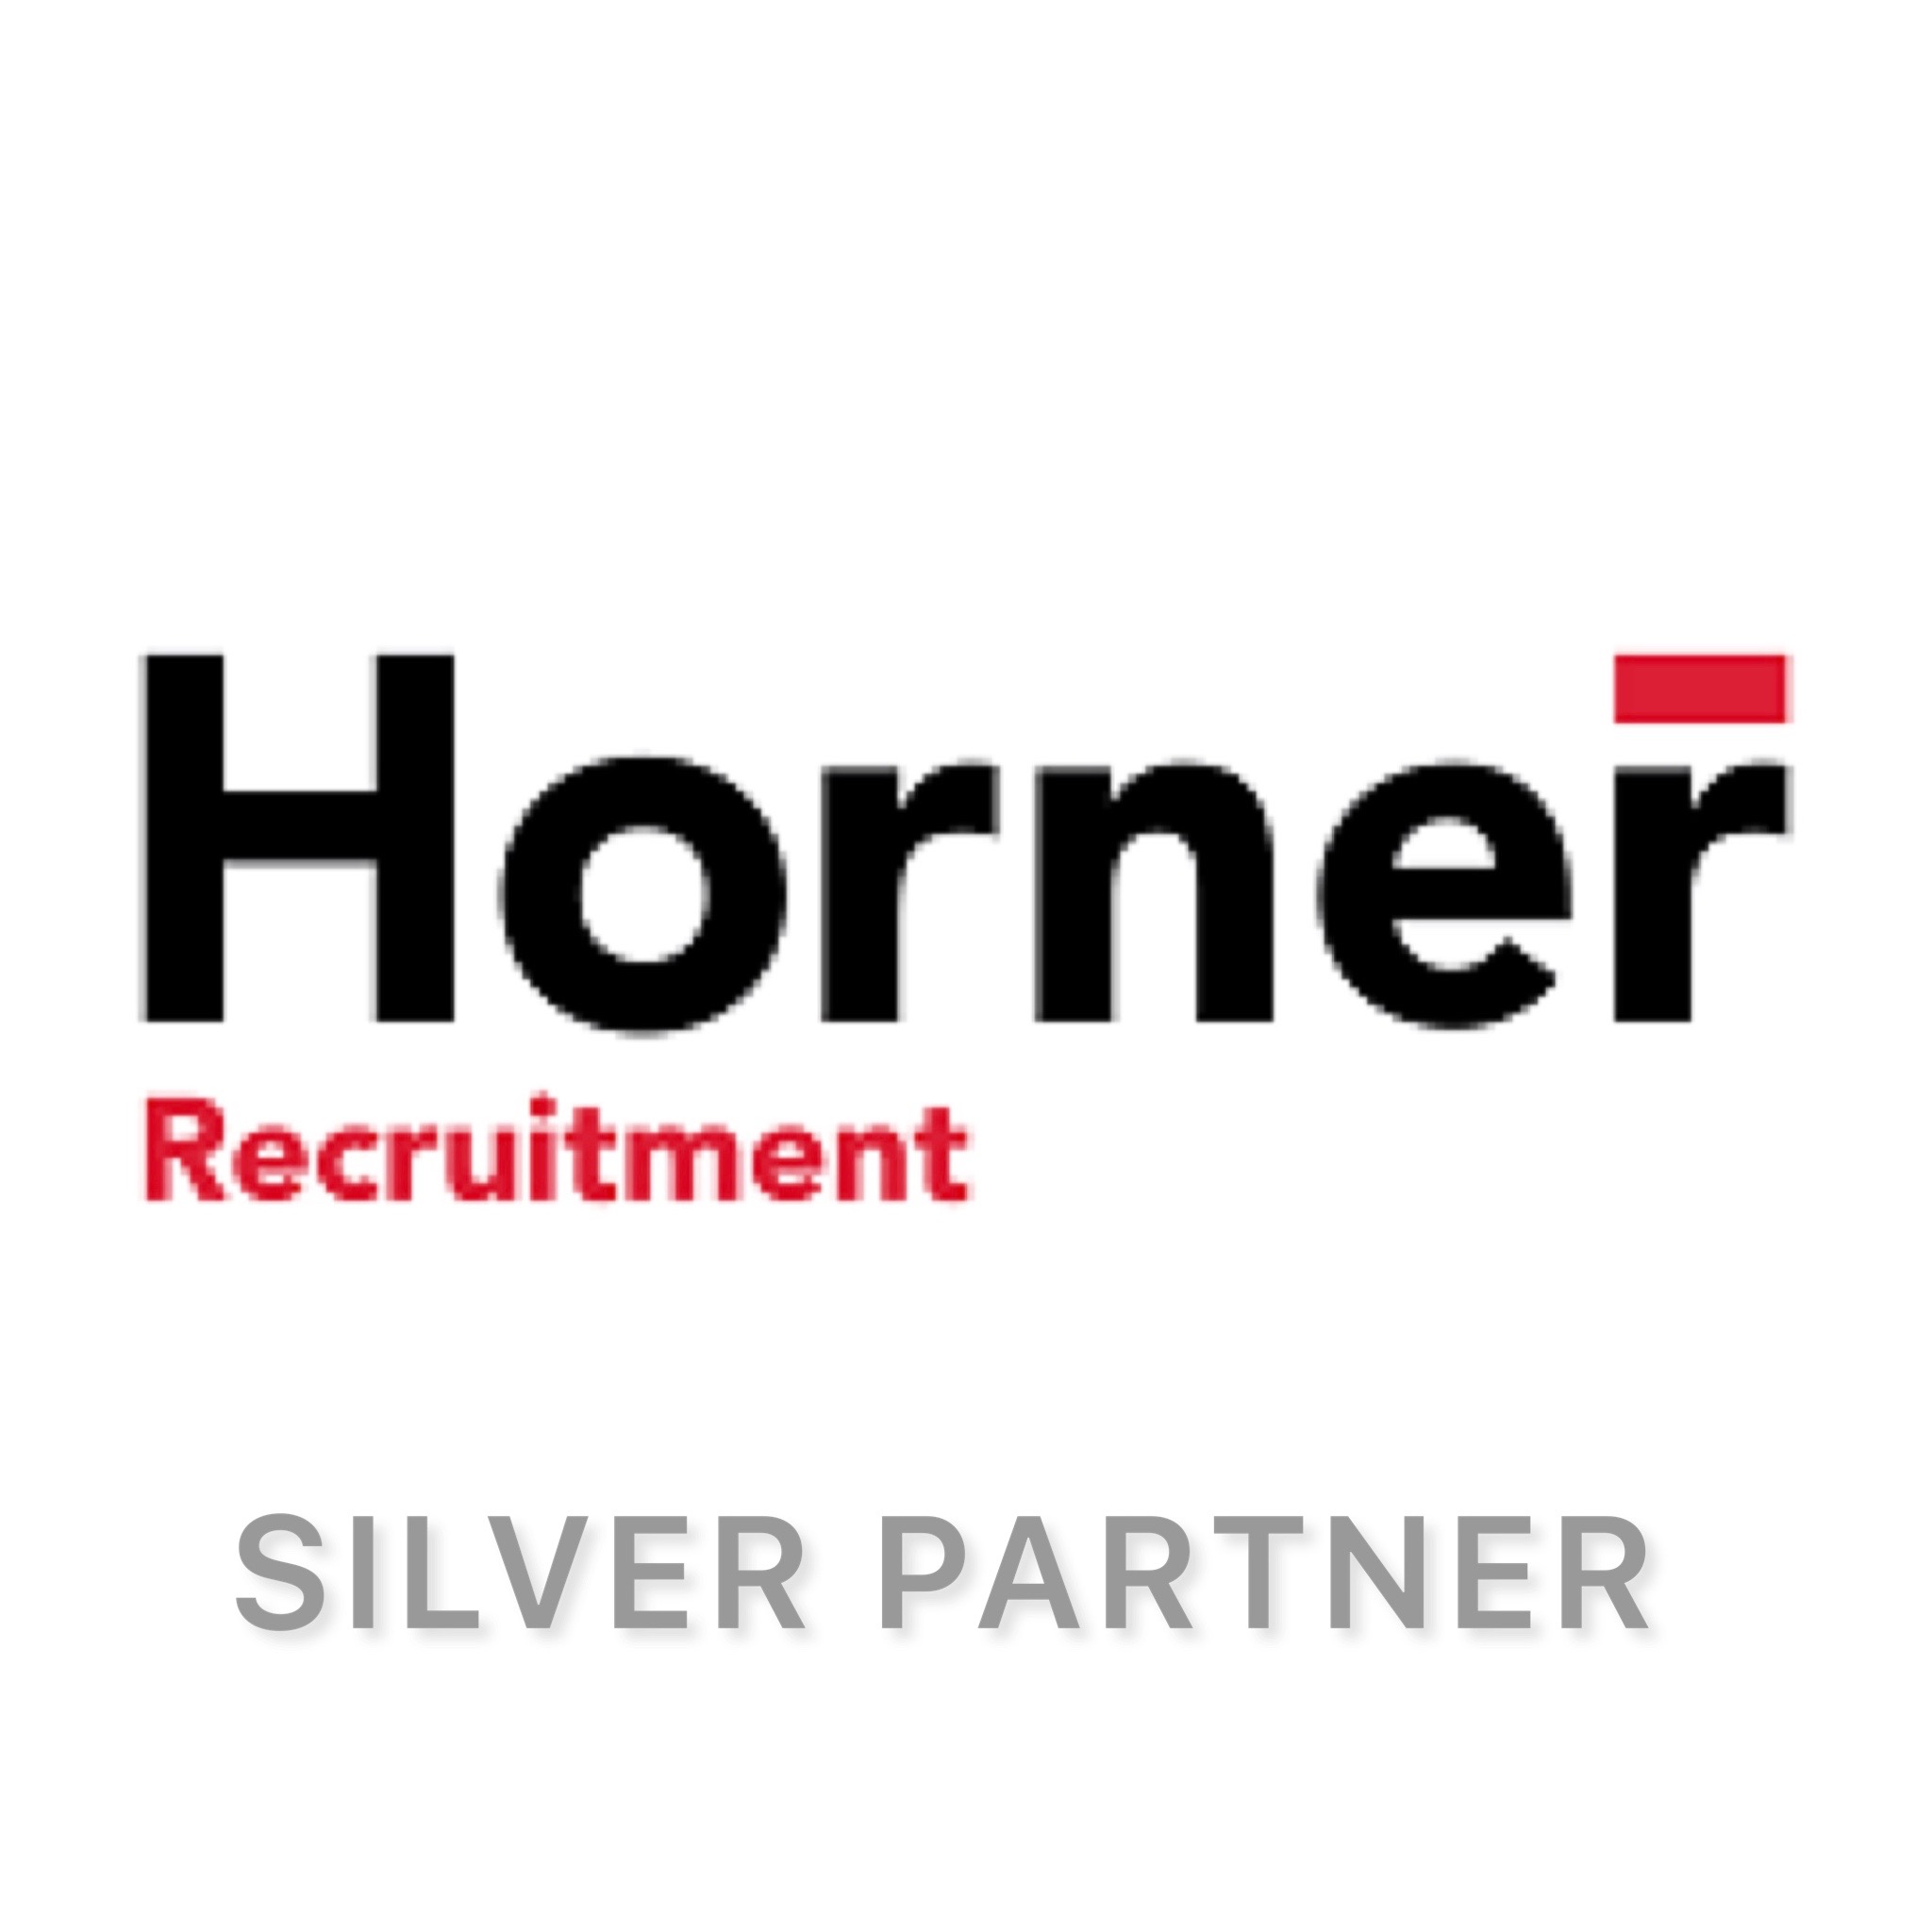 Horner Recruitment Systems